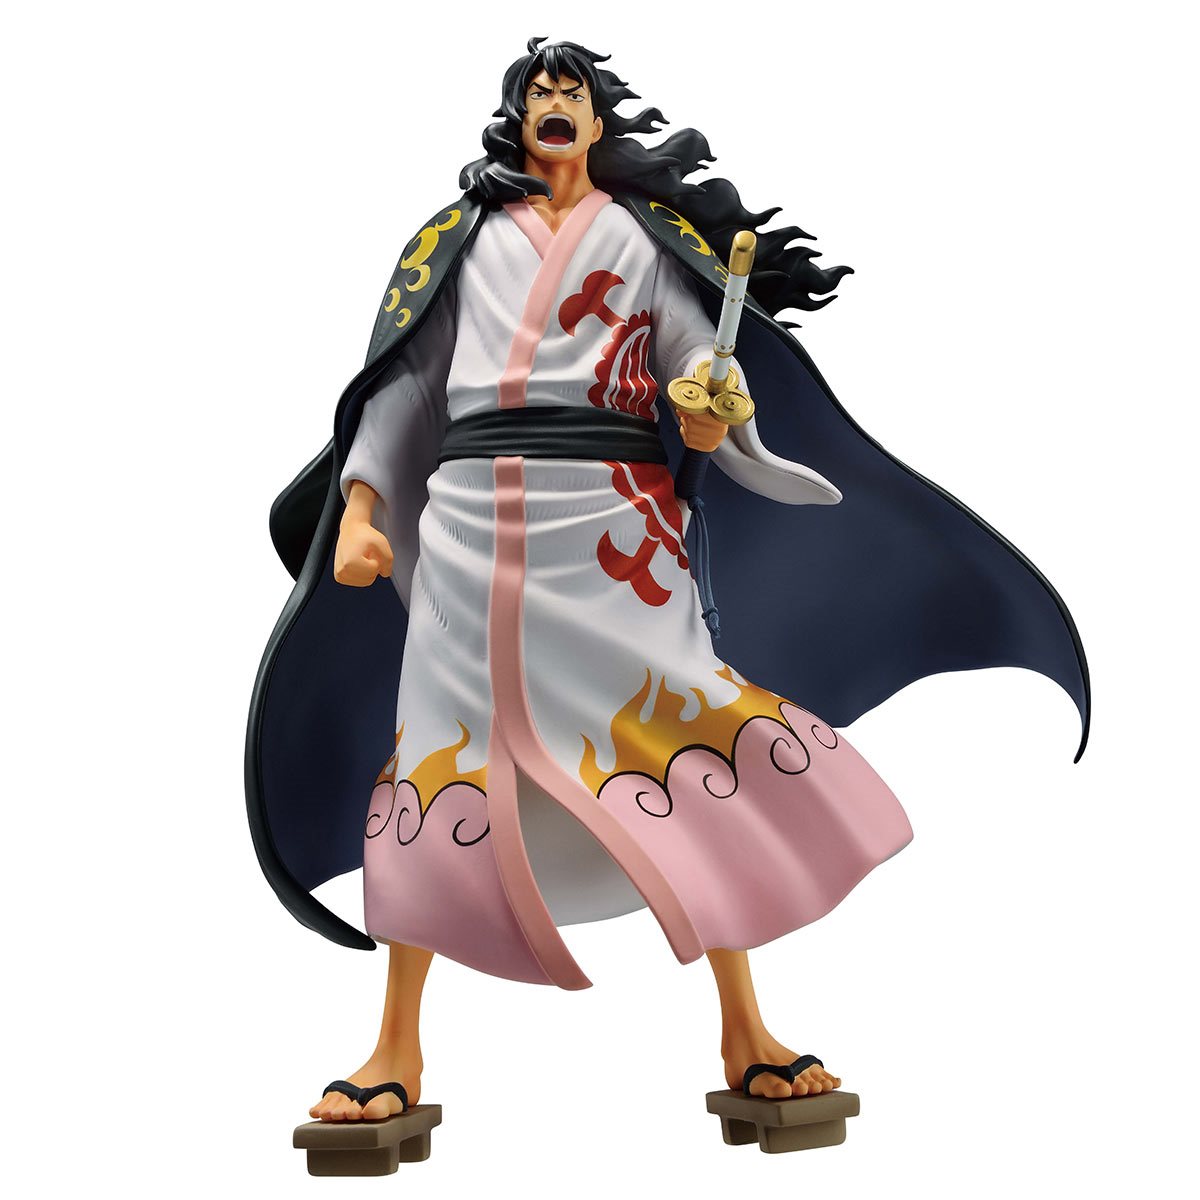 Bandai Tamashii Nations: One Piece - Momonosuke Shogun Estatua Ichibansho Masterlise